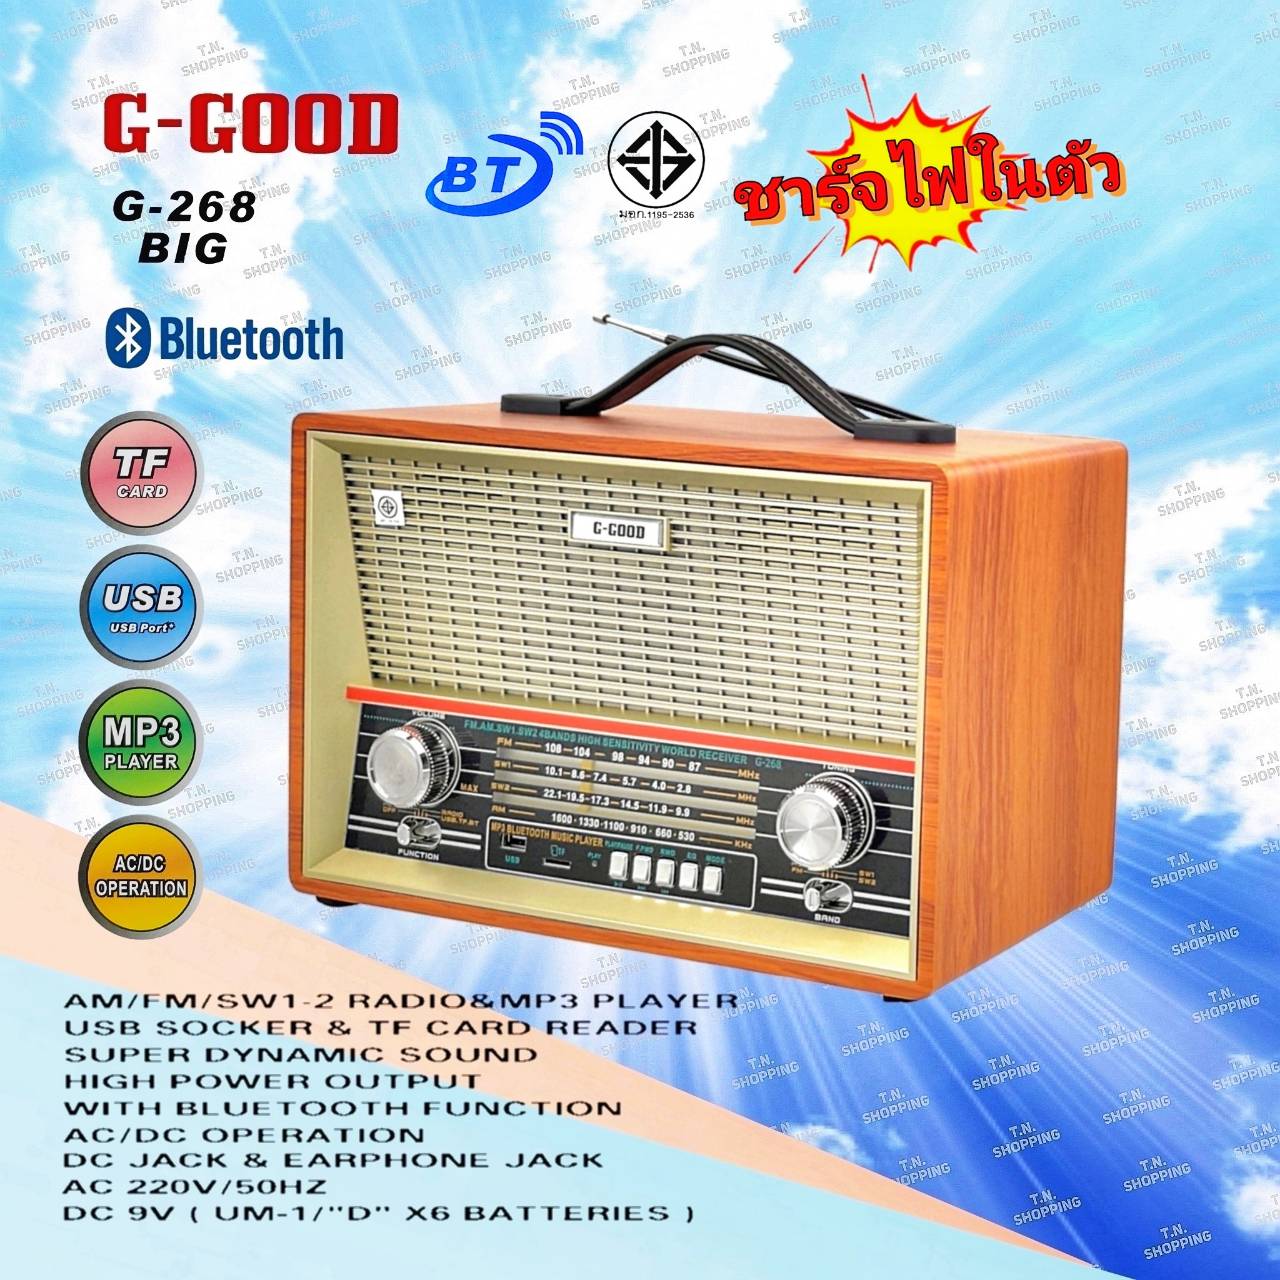 G-GOOD วิทยุ บลูทูธ/USB/ AM/FM/SW1-2 4 BANDS รุ่น G-268 BIG